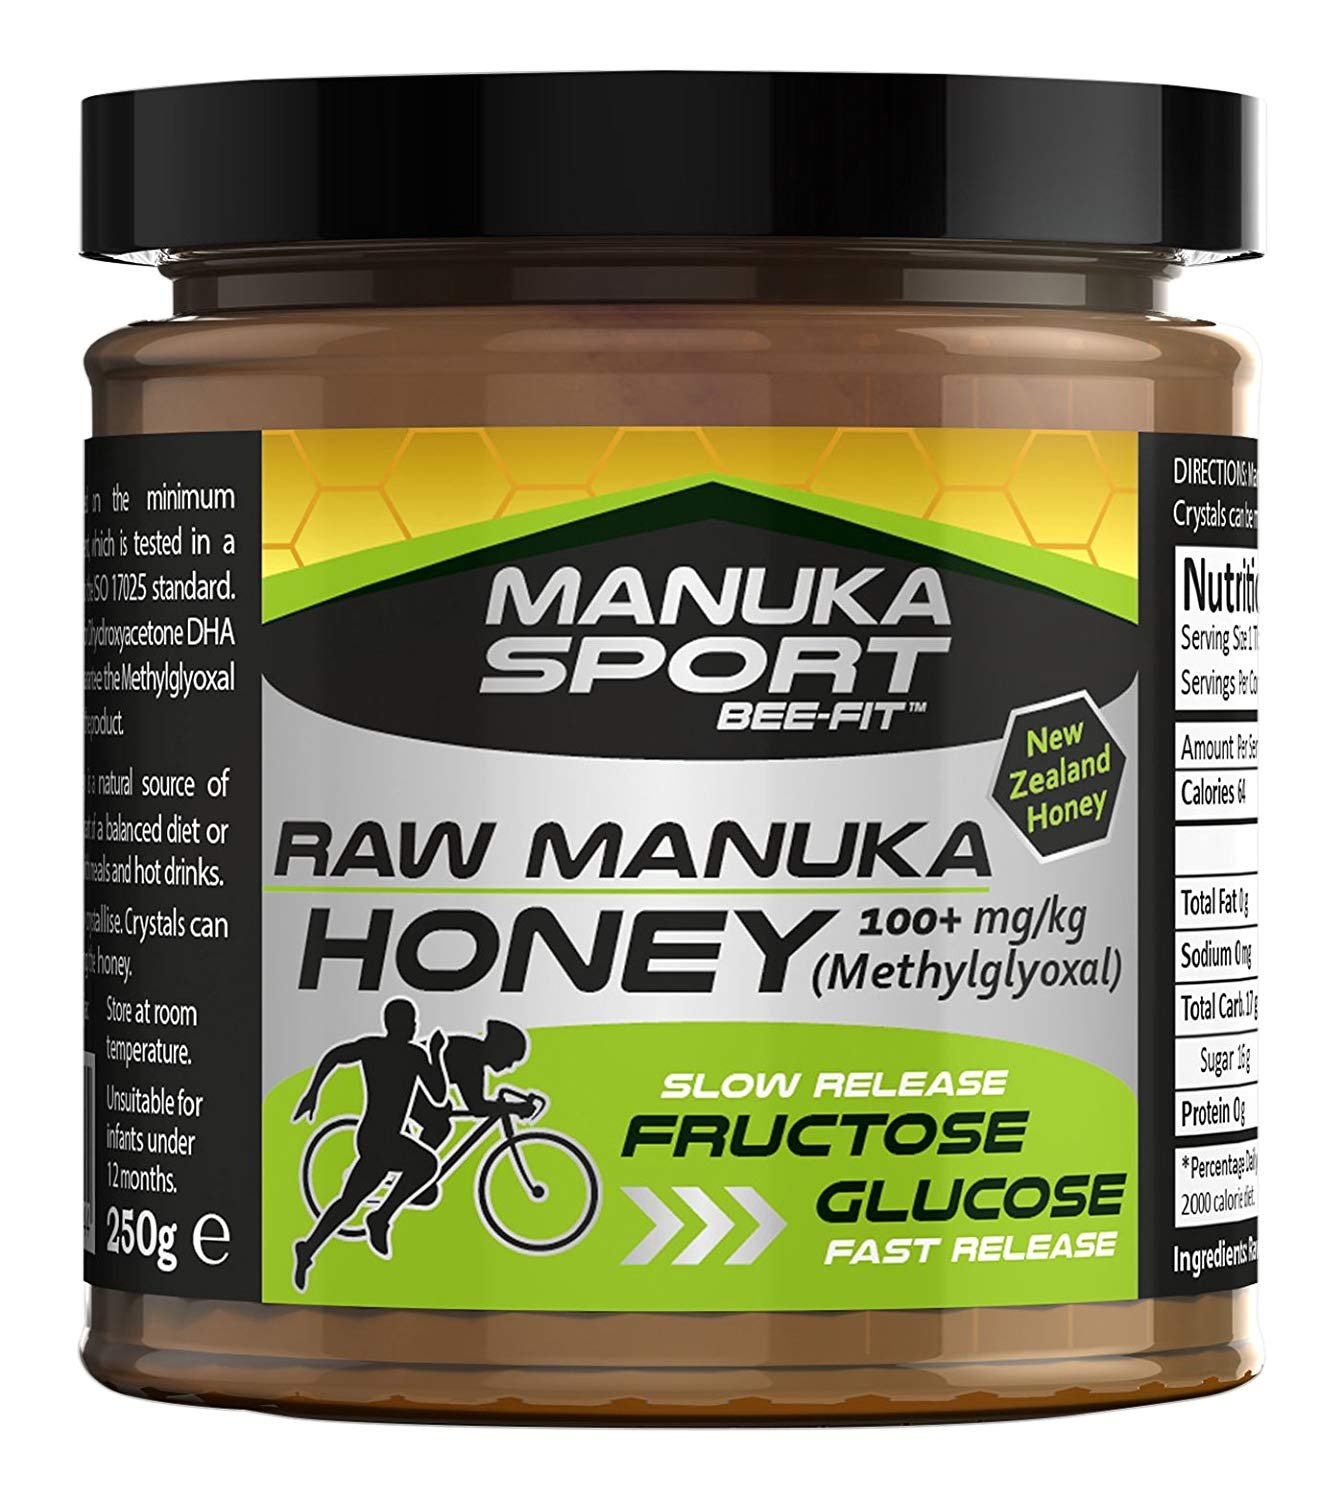 manuka-sports-raw-manuka-honey-offers-health-benefits-to-athletes